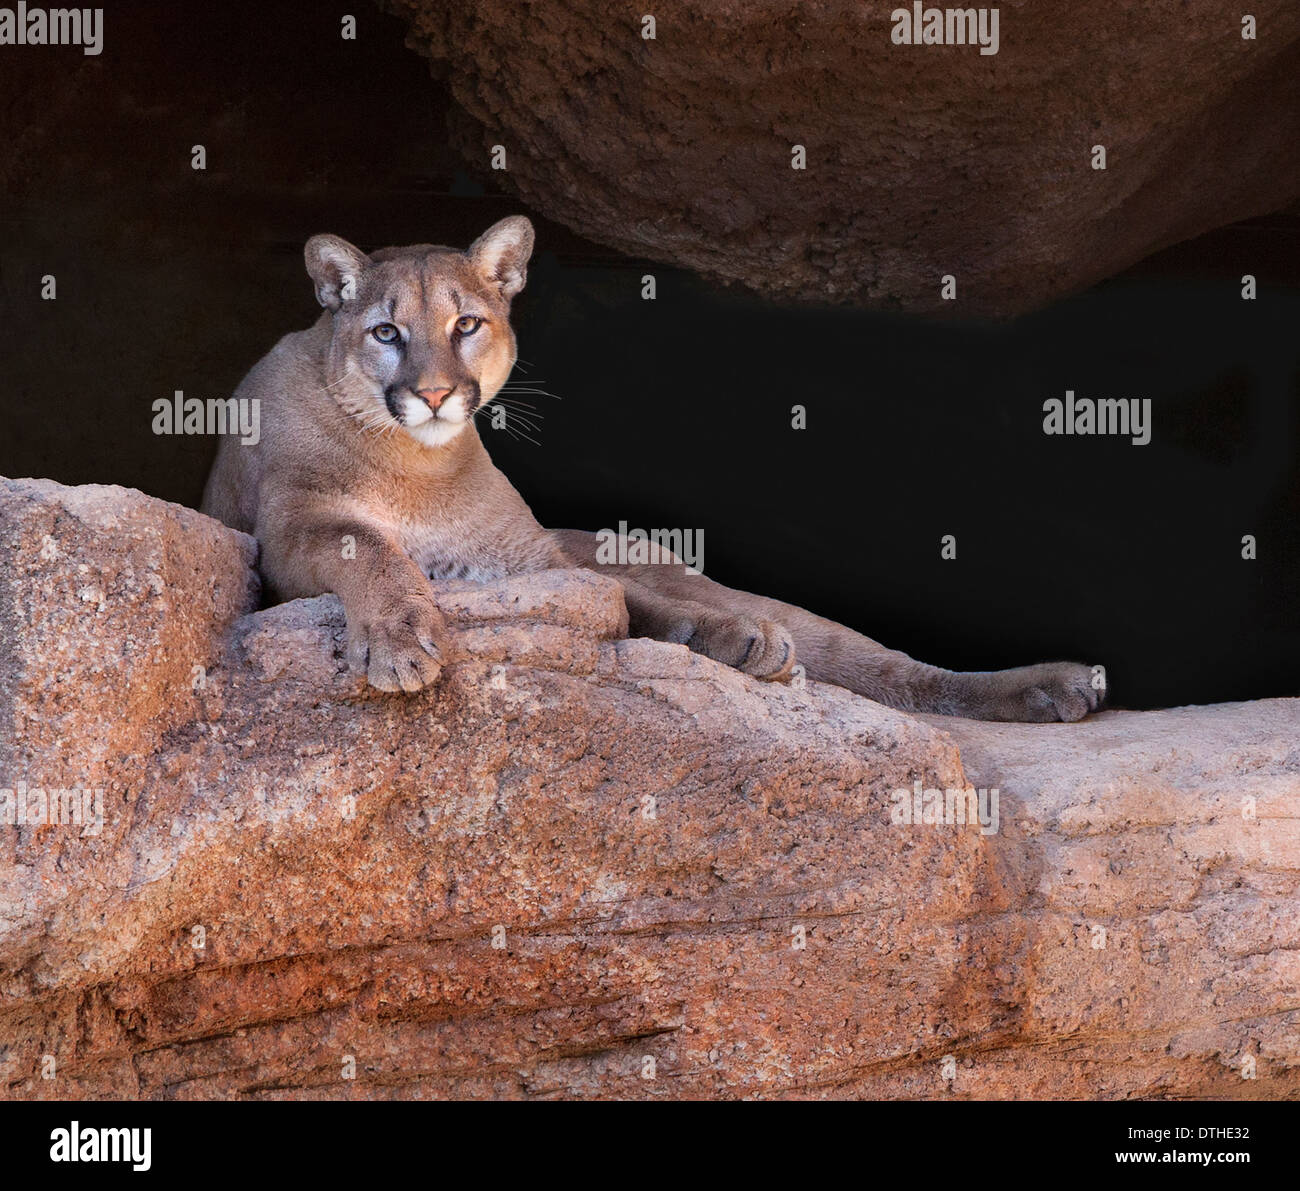 Un cougar, o leone di montagna, guarda da un persico roccioso. Preso in un santuario della fauna selvatica a Tucson, Arizona chiamato l'Arizona - sonora Desert Museum Foto Stock